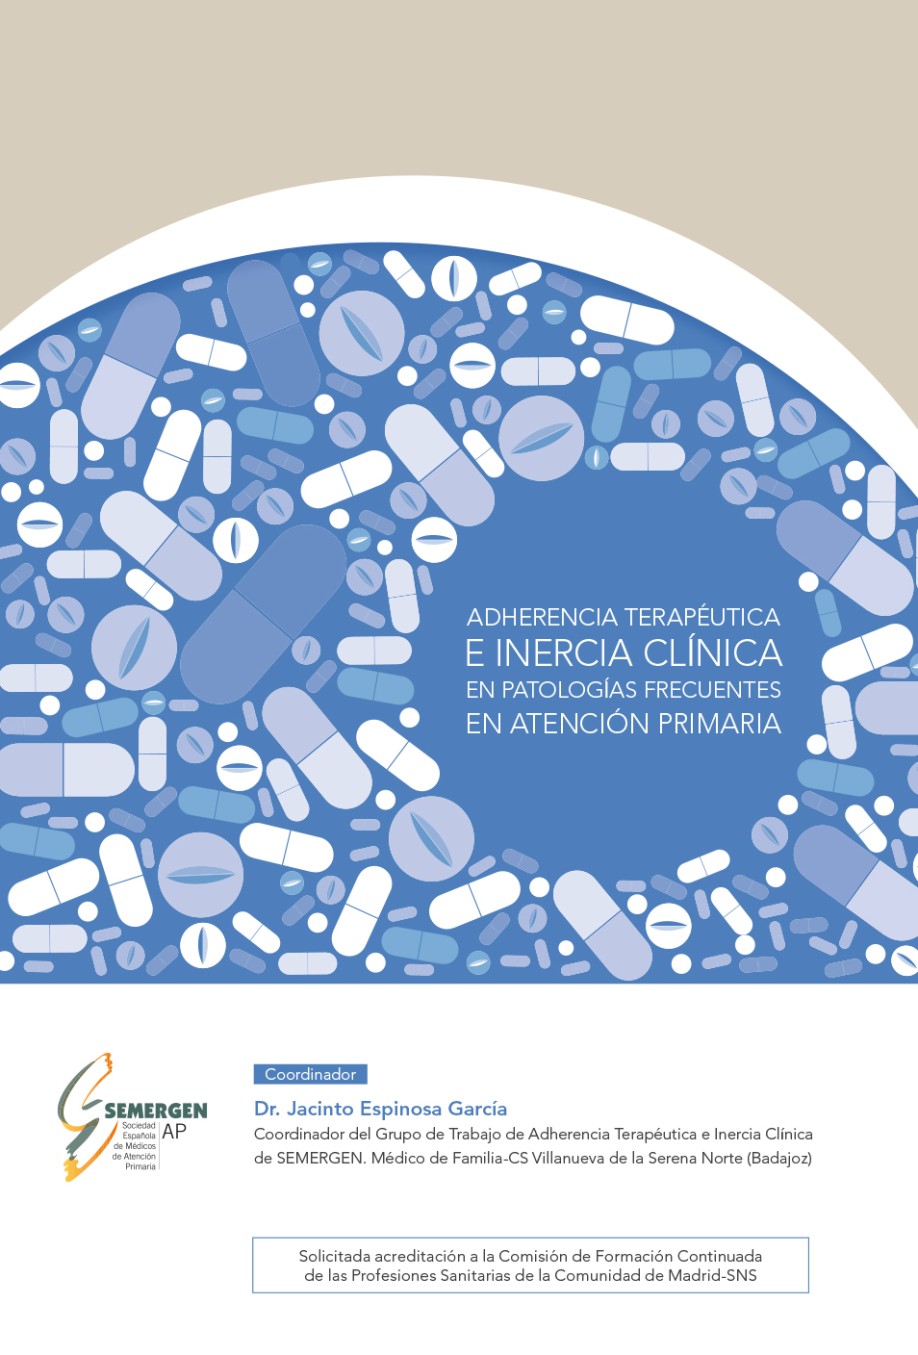 Adherencia terapéutica e inercia clínica en patologías frecuentes en atención primaria